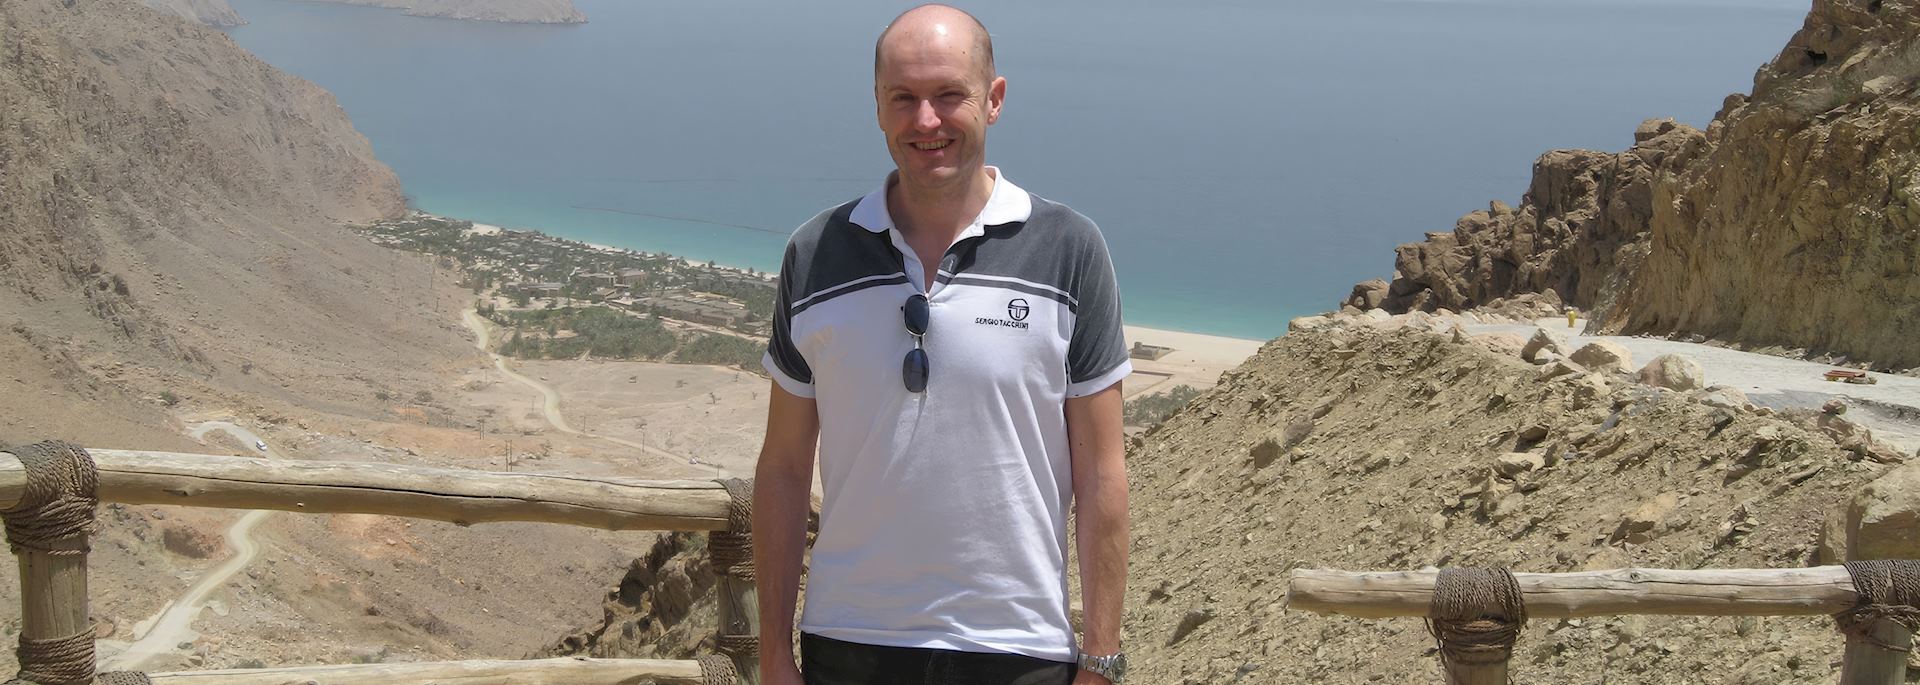 Chris at Zighy Bay, Oman